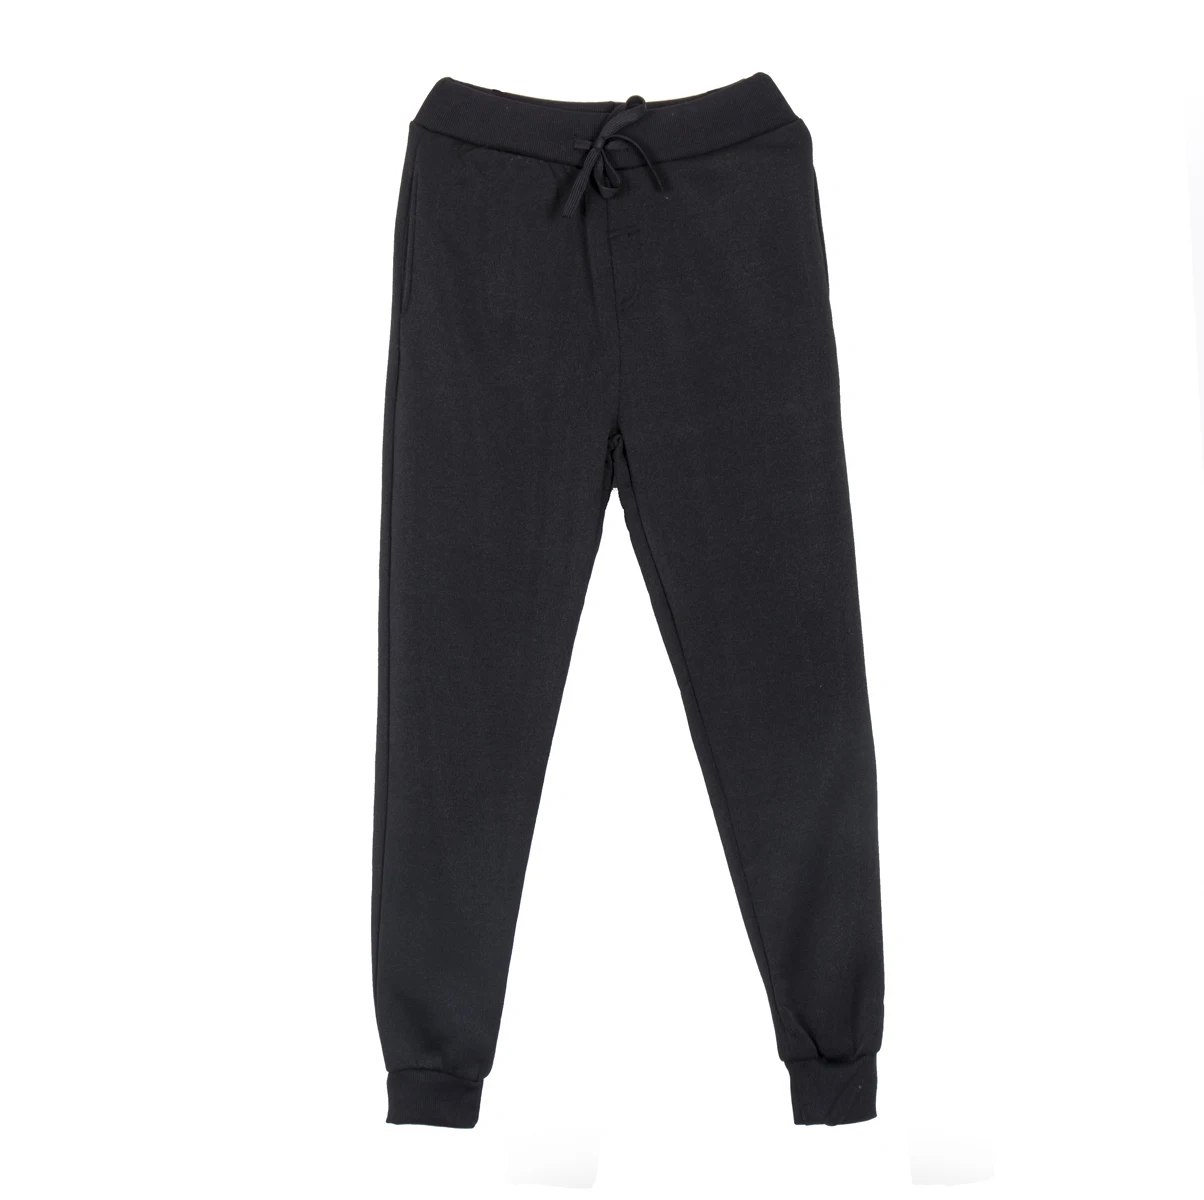 Мужские спортивные штаны для бега с карманами, спортивный, футбольный футбольные штаны, дышащие спортивные штаны, леггинсы, Беговые брюки для тренировок, большие размеры - Цвет: Черный